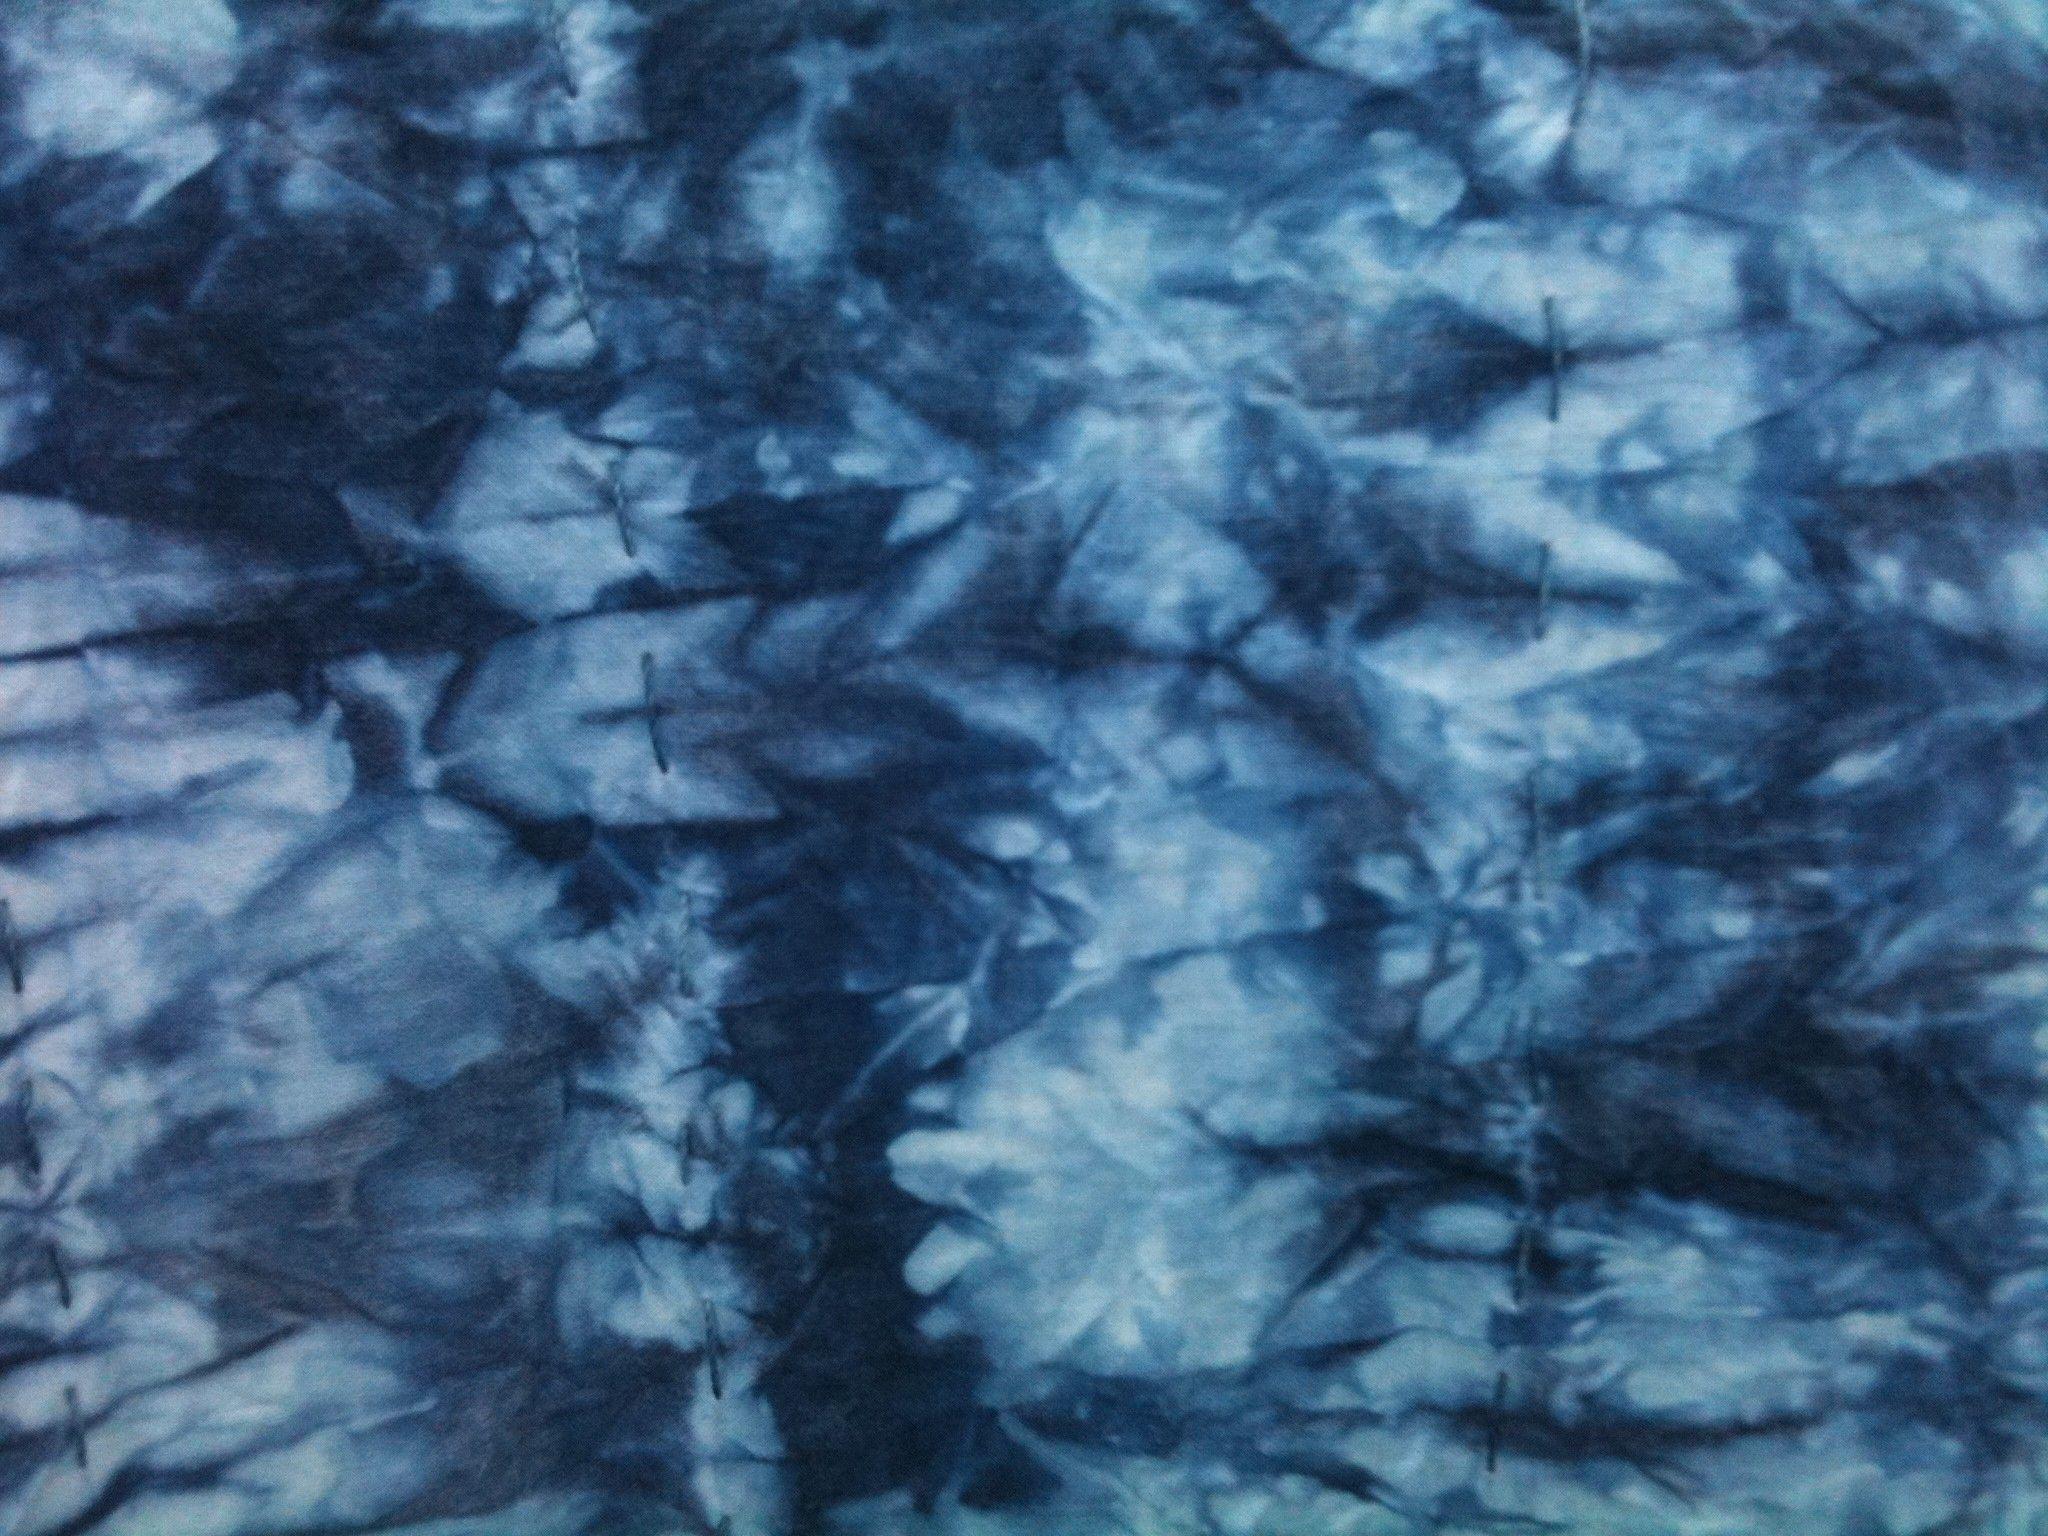 Blue Tie Dye Wallpapers - Top Free Blue Tie Dye Backgrounds ...